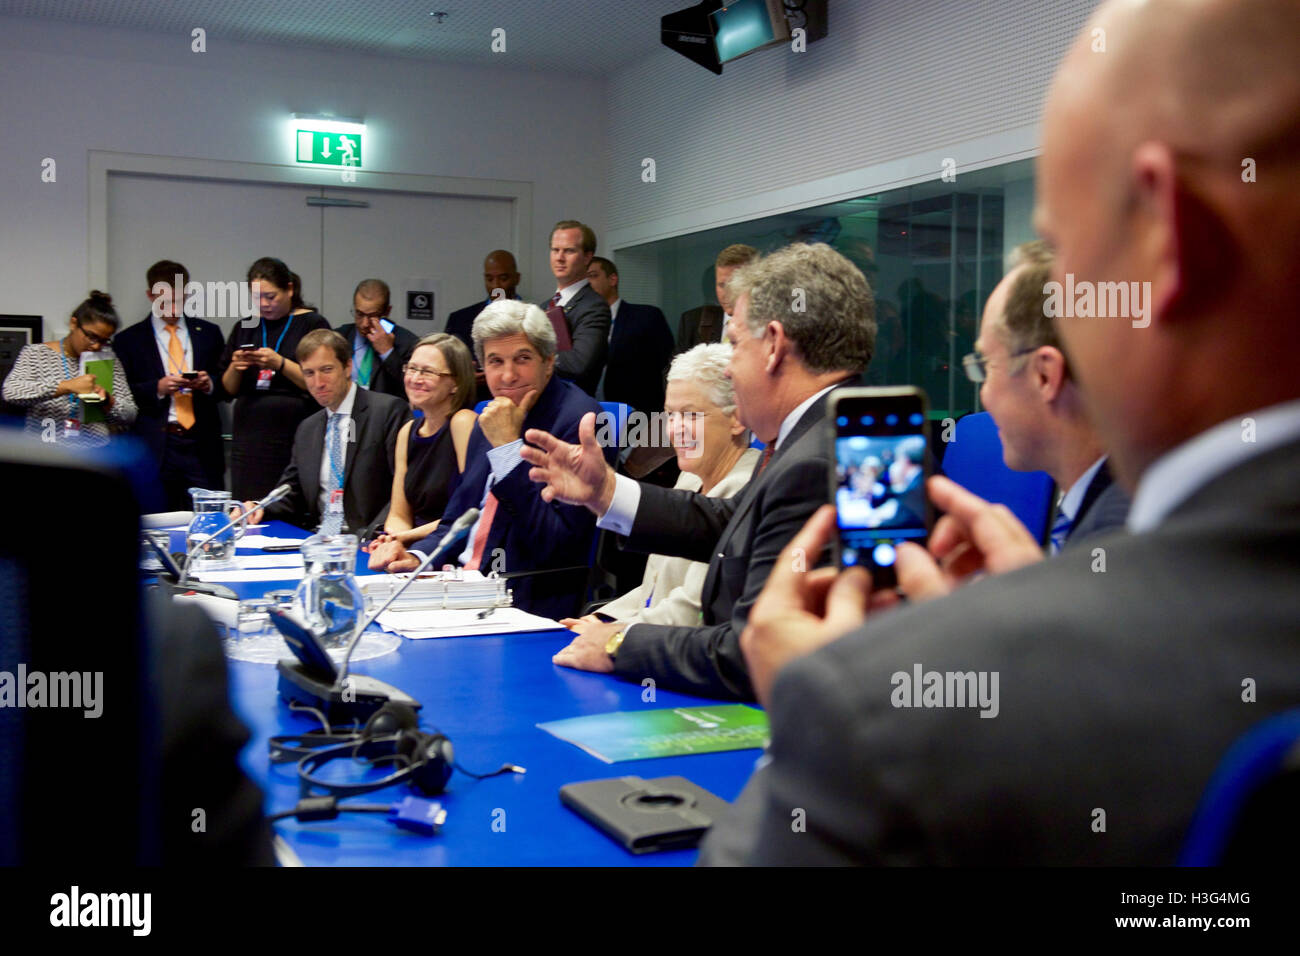 US-Außenminister John Kerry trifft sich mit Vertretern aus verschiedenen nicht-Regierungs-Organisationen und andere Gruppen am 22. Juli 2016, bei der Vienna International Center in Wien, Österreich, mitten in Verhandlungen zur Änderung des Montrealer Protokolls Klimas ändern Vereinbarung. Stockfoto